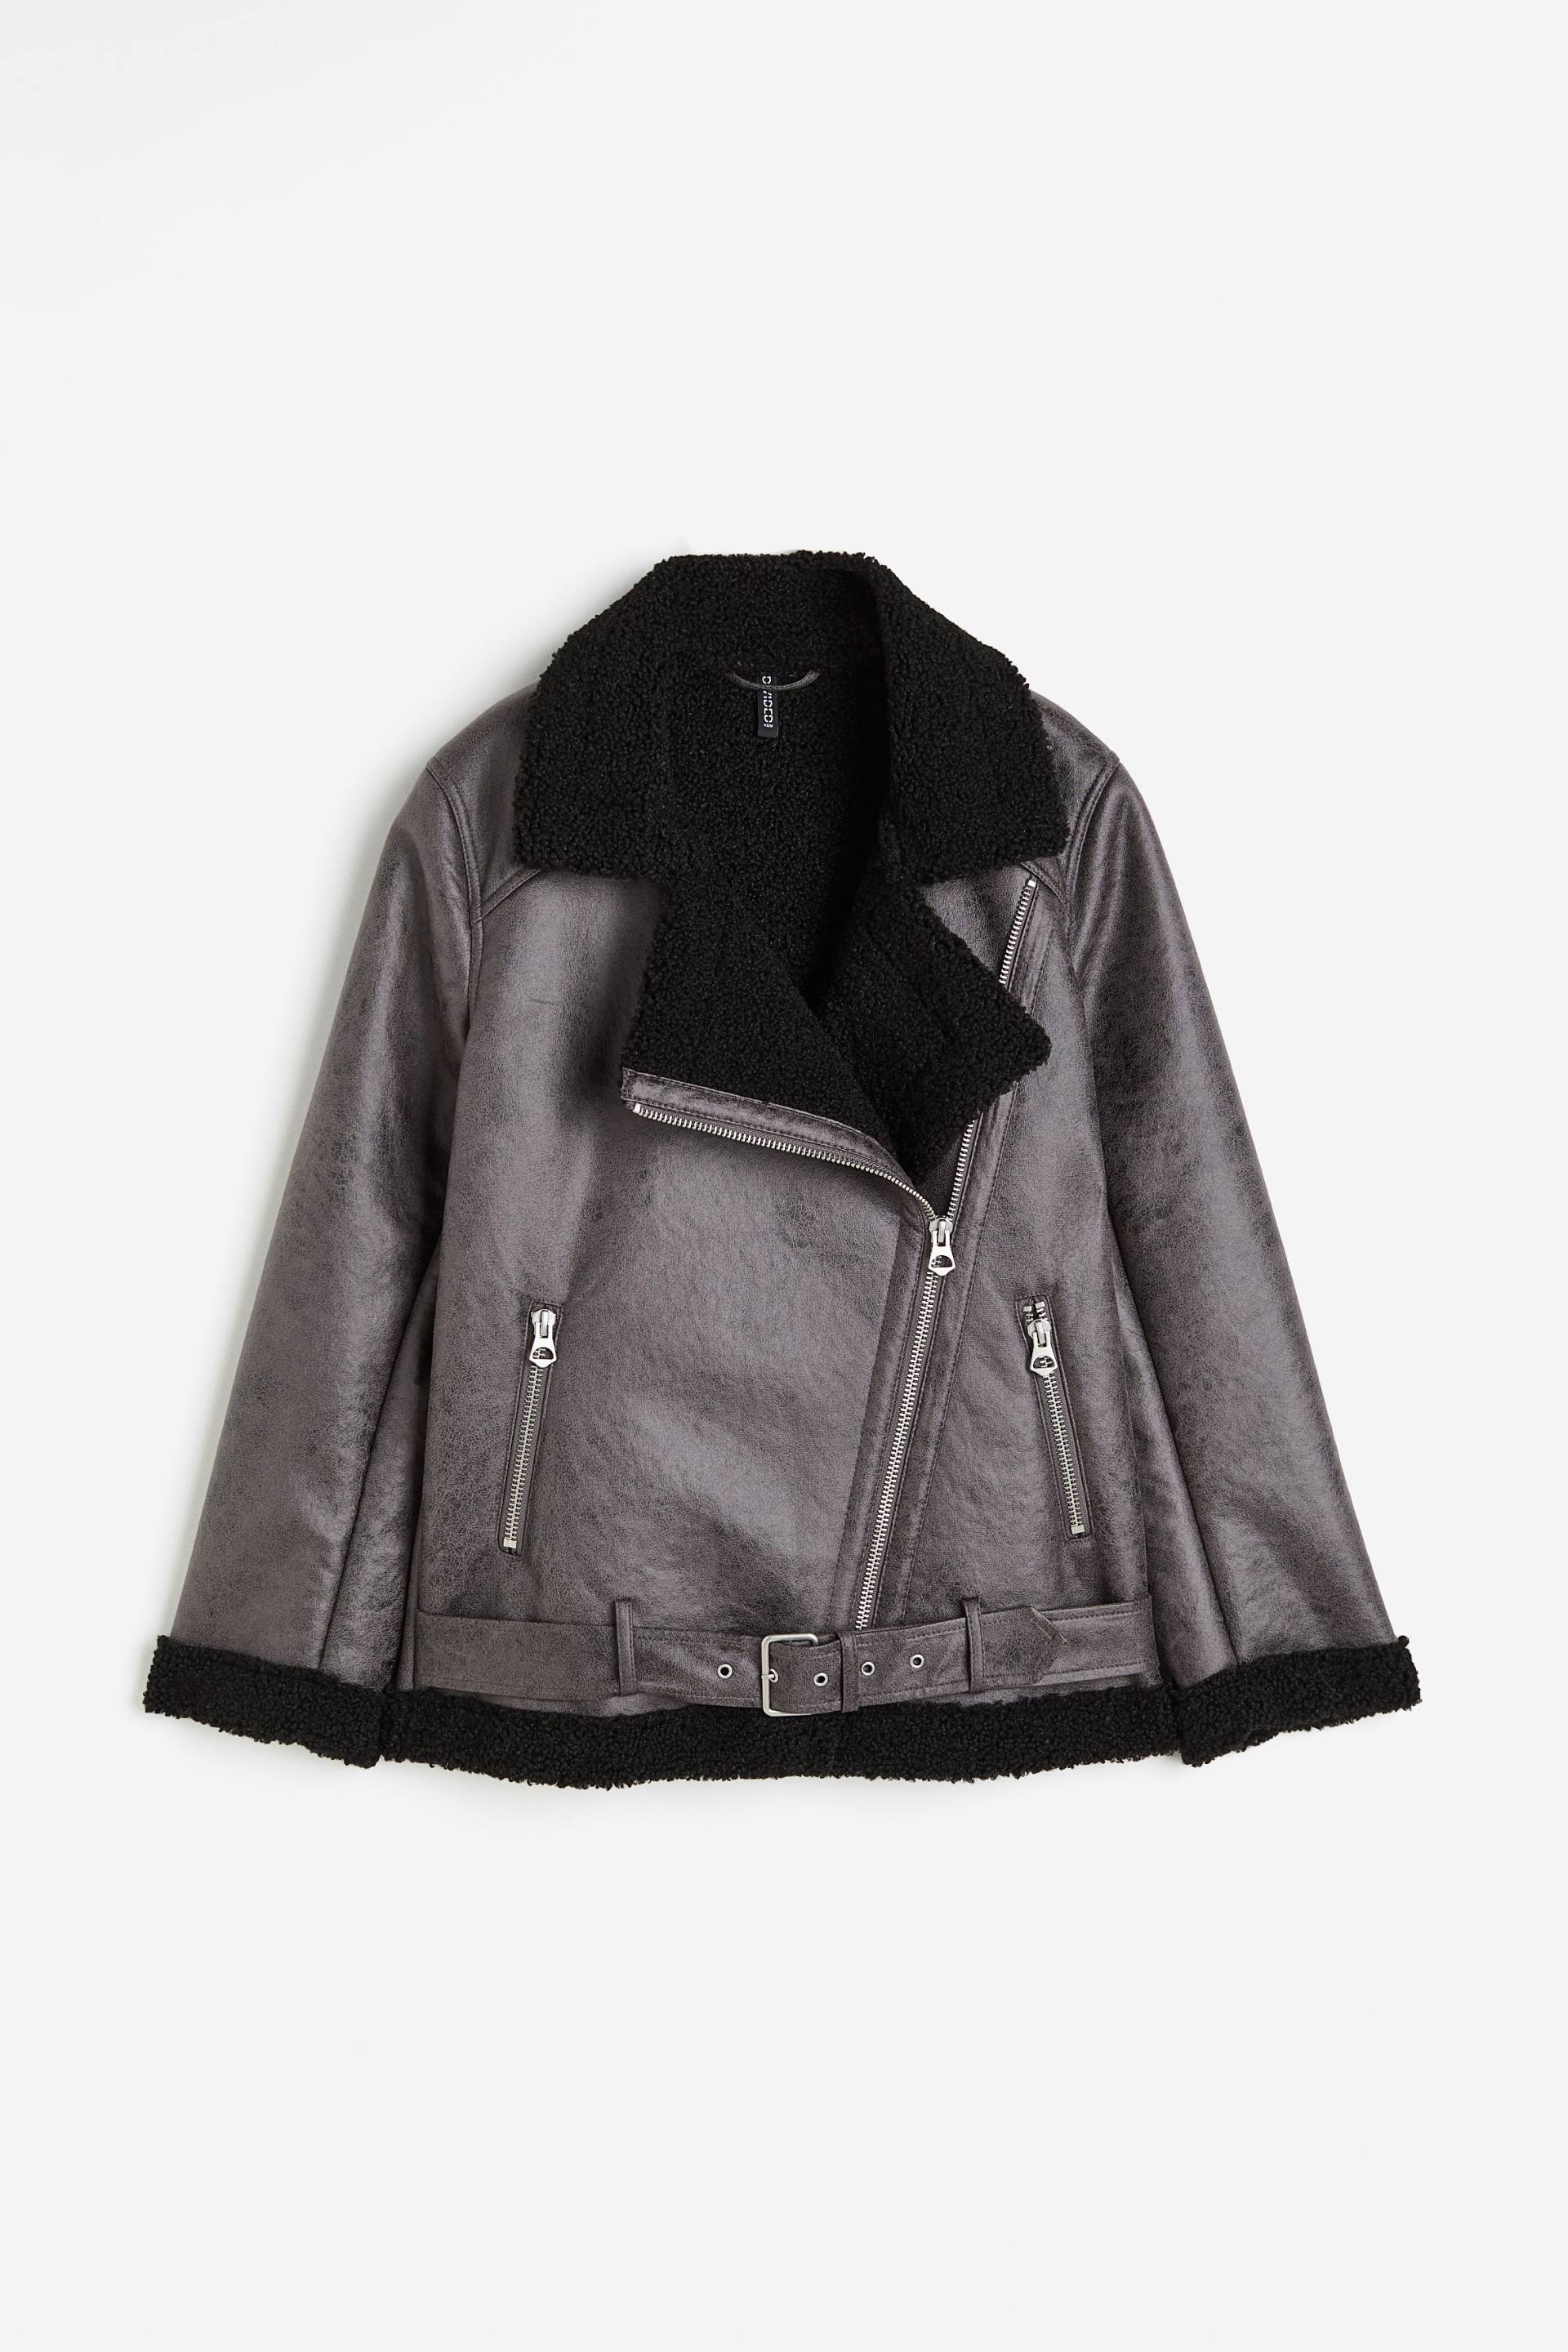 H&M Fliegerjacke Dunkelgrau, Jacken in Größe XXS. Farbe: Dark grey von H&M